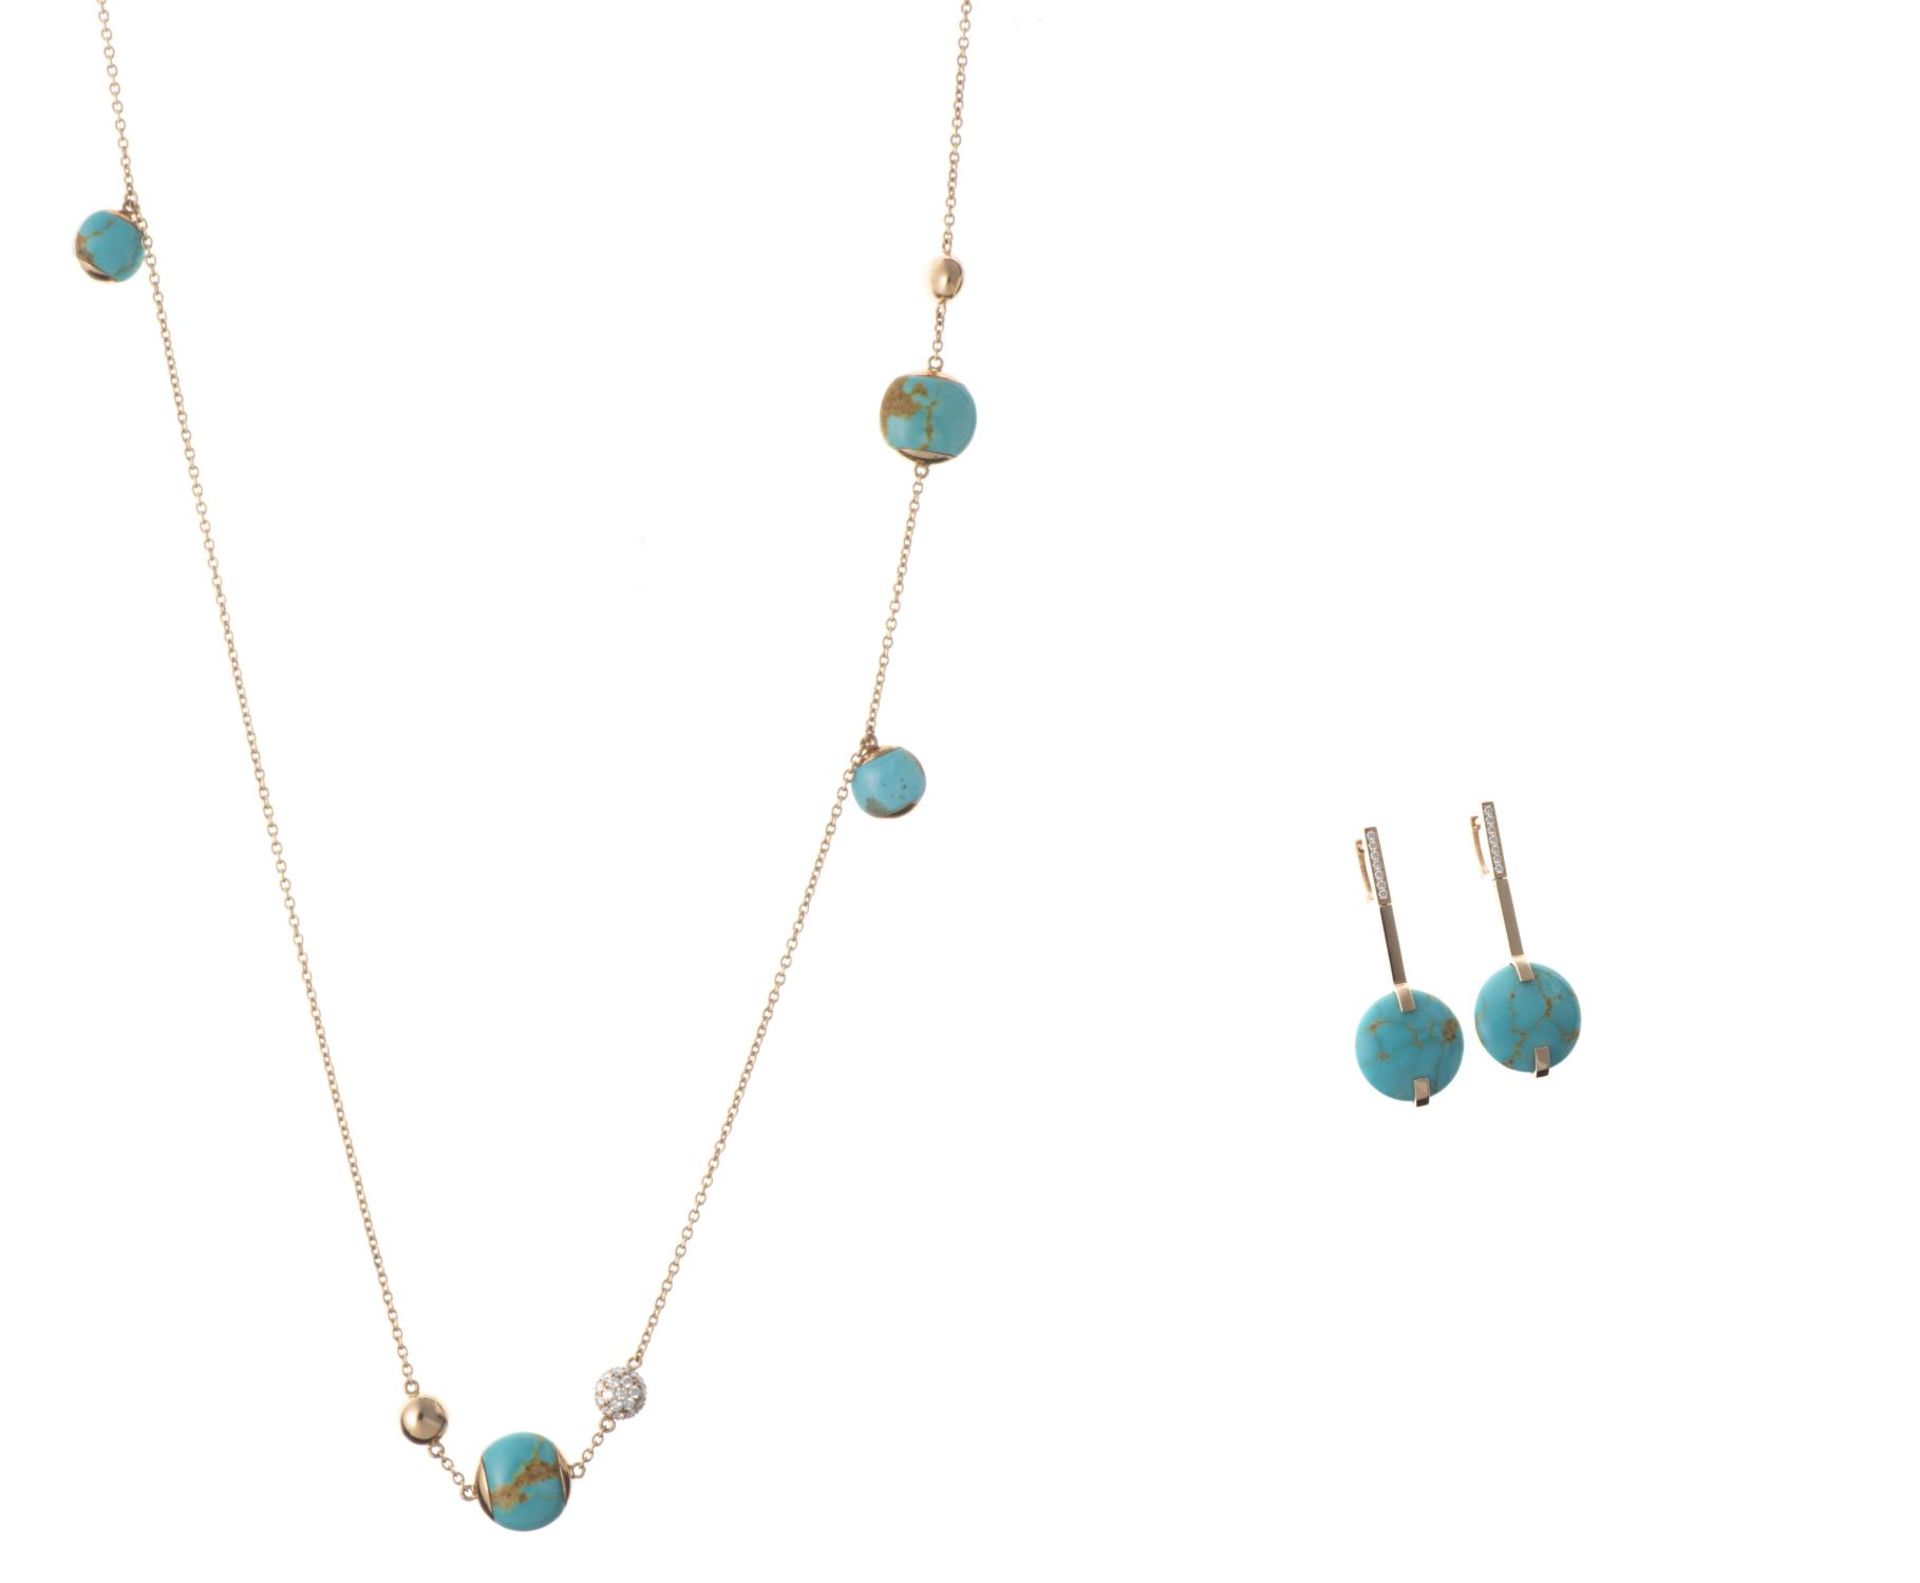 ROBERTO COIN, Collier en or, turquoises, diamants et boucles d'oreille... - Image 6 of 6